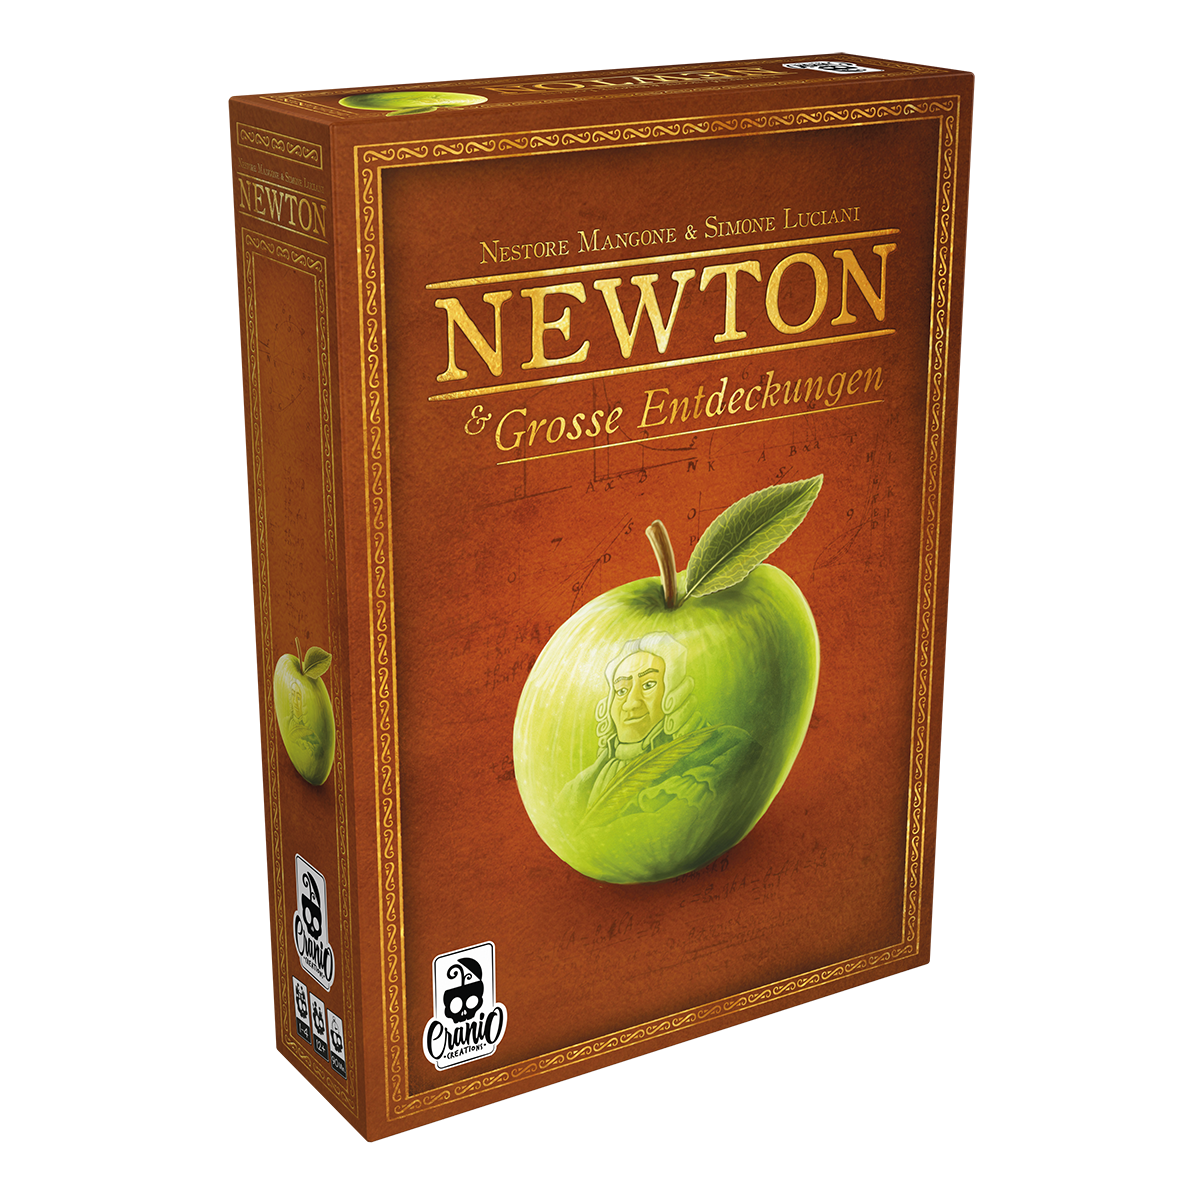 Newton & große Entdeckungen